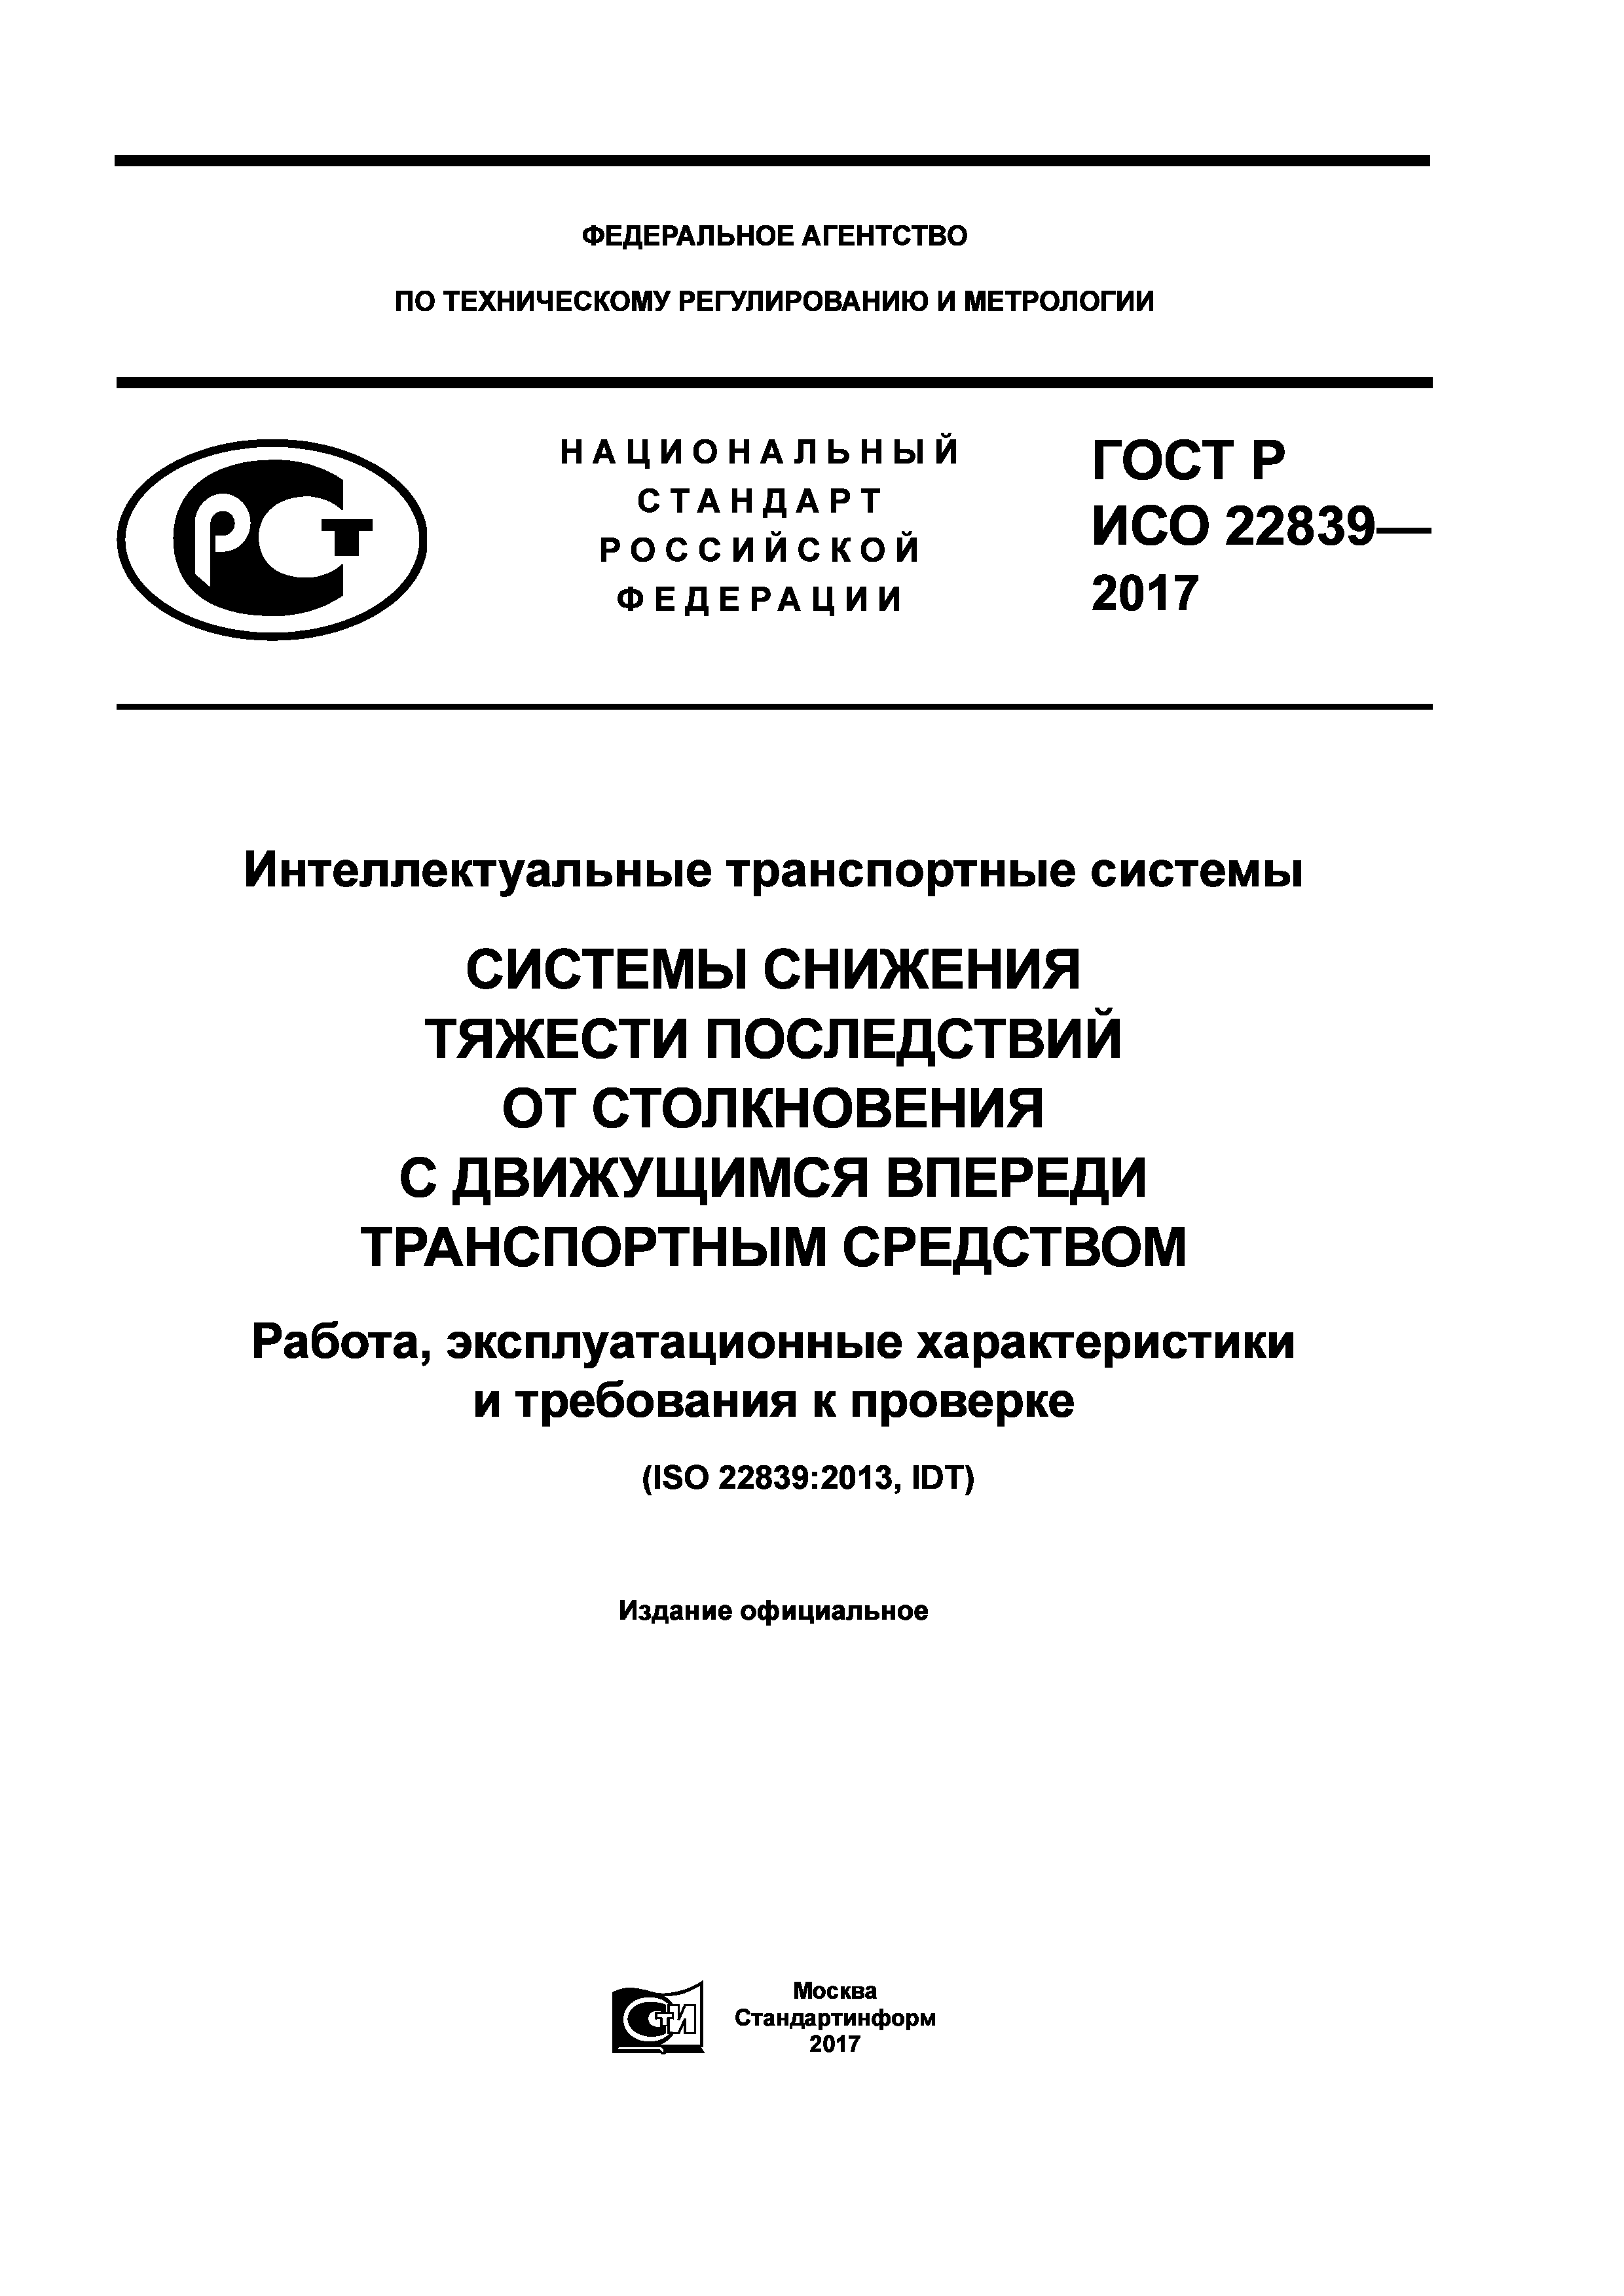 ГОСТ Р ИСО 22839-2017